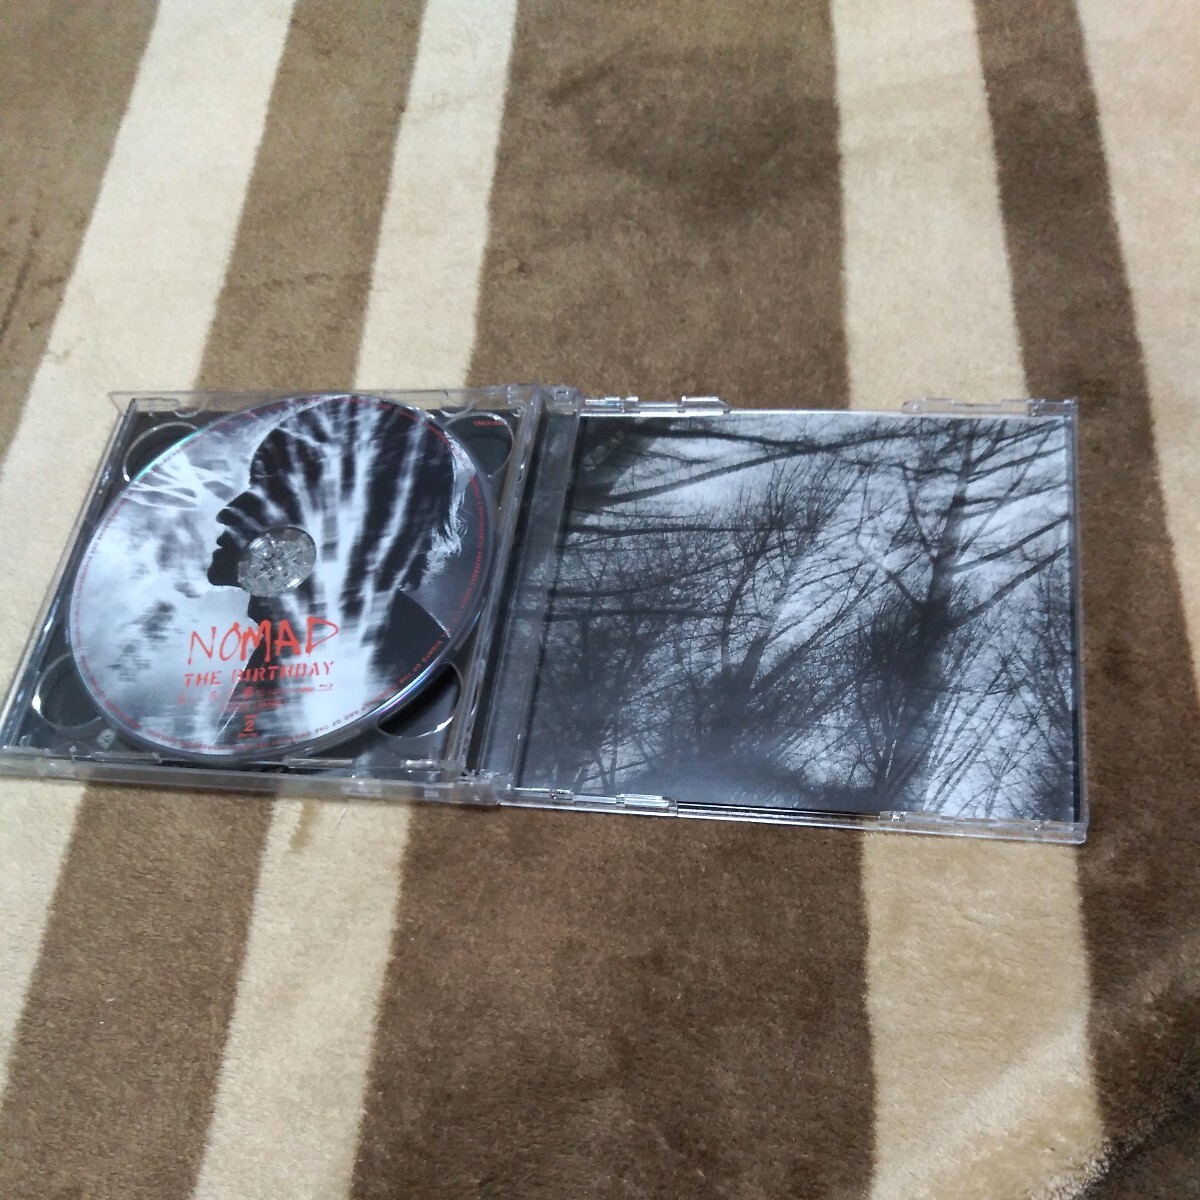 初回限定盤 The Birthday 「NOMAD」 SHM-CD+blu-ray 2枚組 チバユウスケ ミッシェルガンエレファント THEE MICHELLE GUN ELEPHANT _画像4